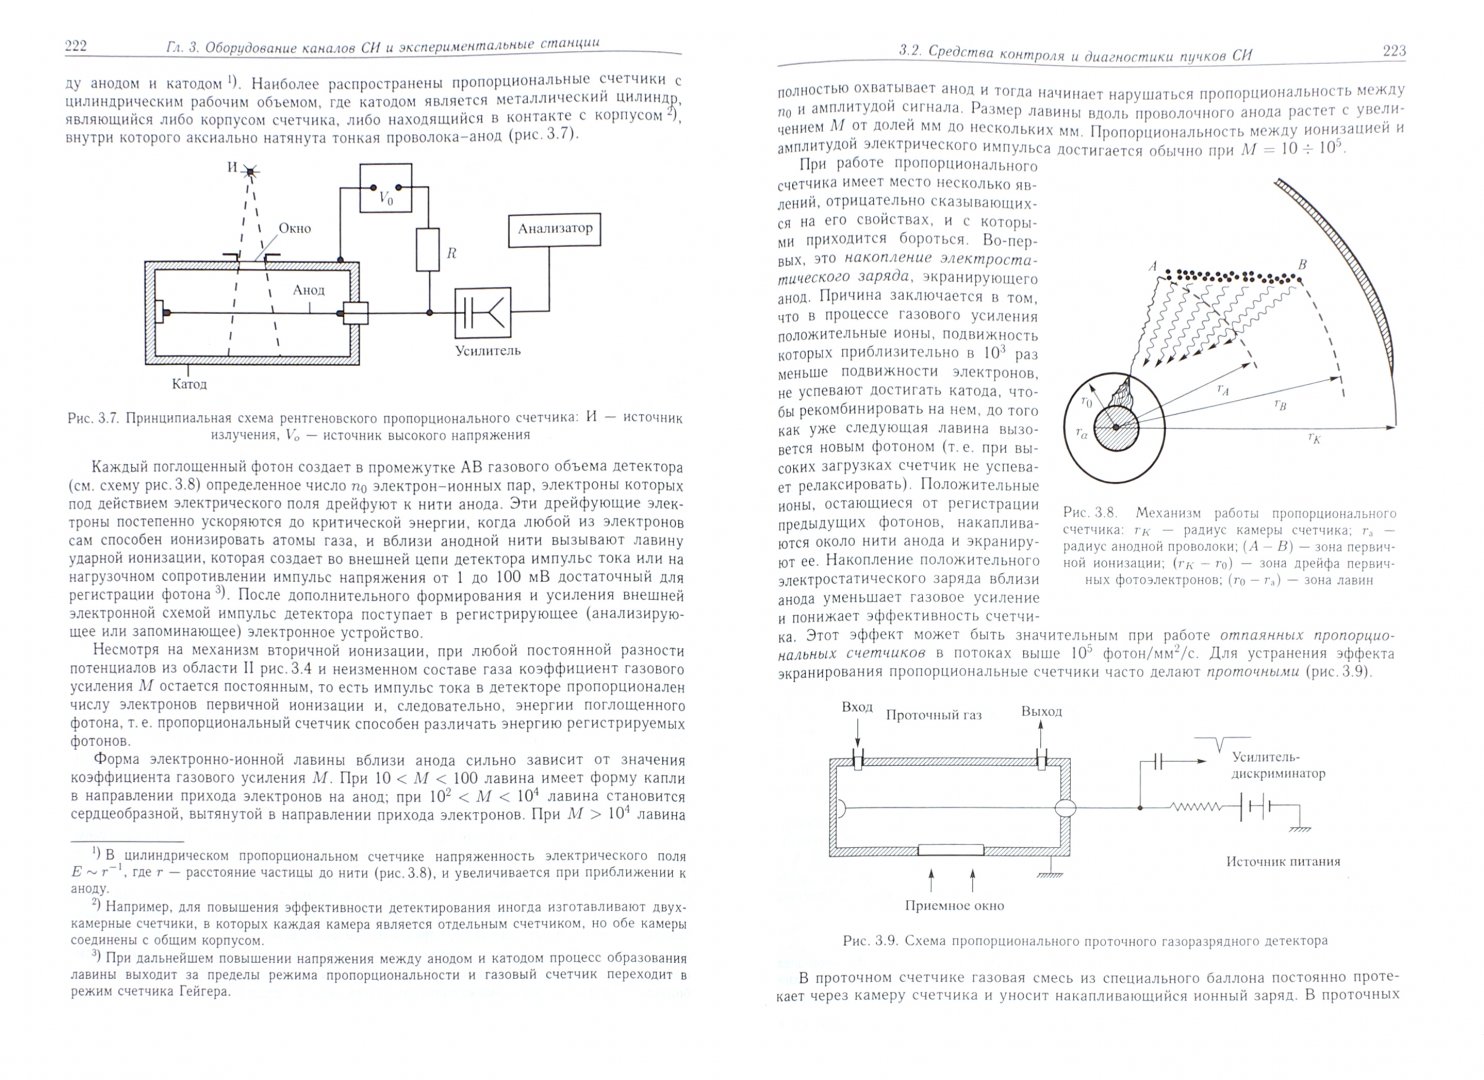 Иллюстрация 1 из 13 для Синхротронное излучение. Методы исследования структуры веществ - Геннадий Фетисов | Лабиринт - книги. Источник: Лабиринт